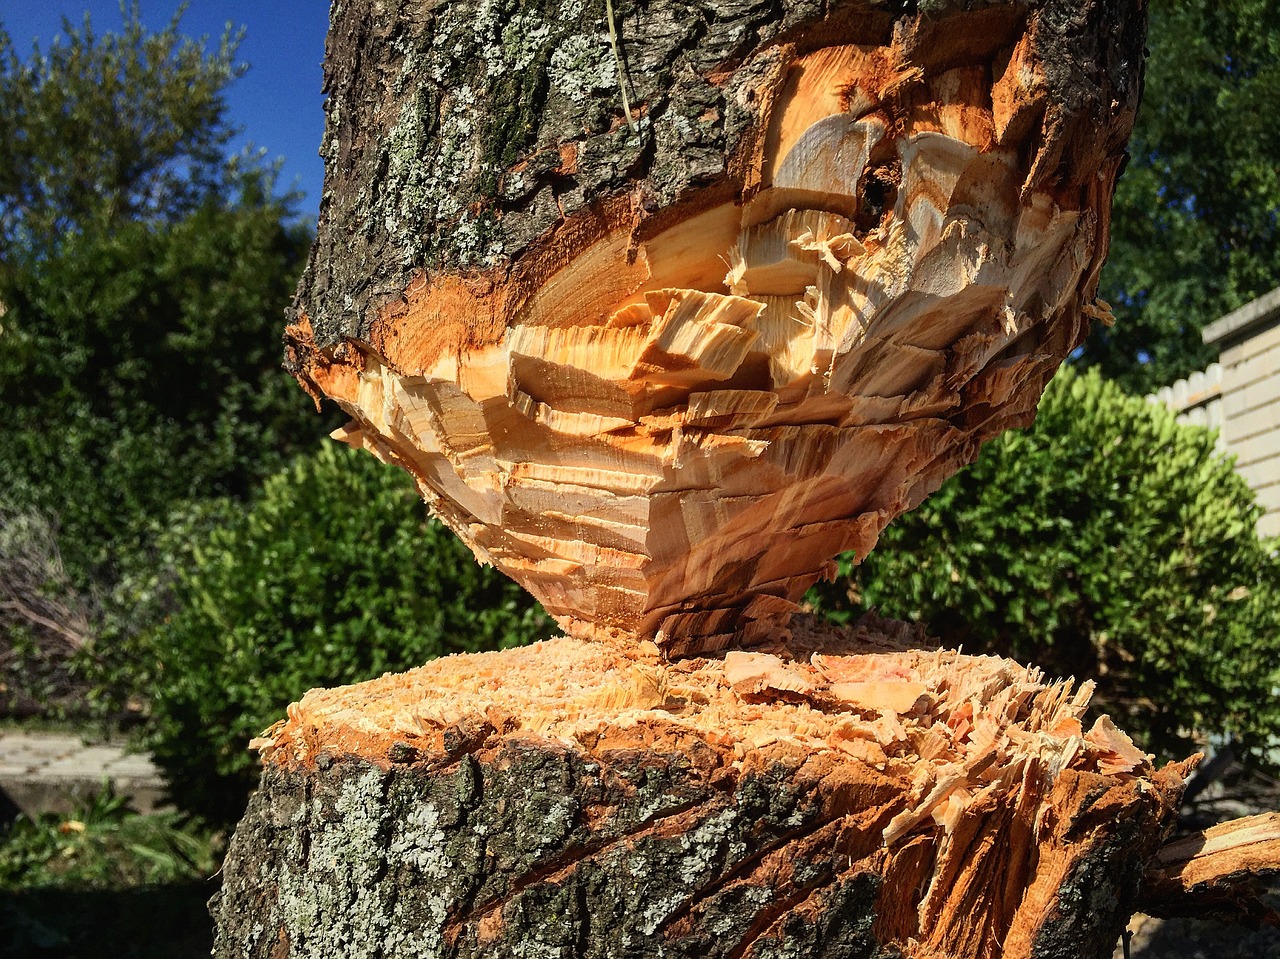 Image - wood nature log stump trees